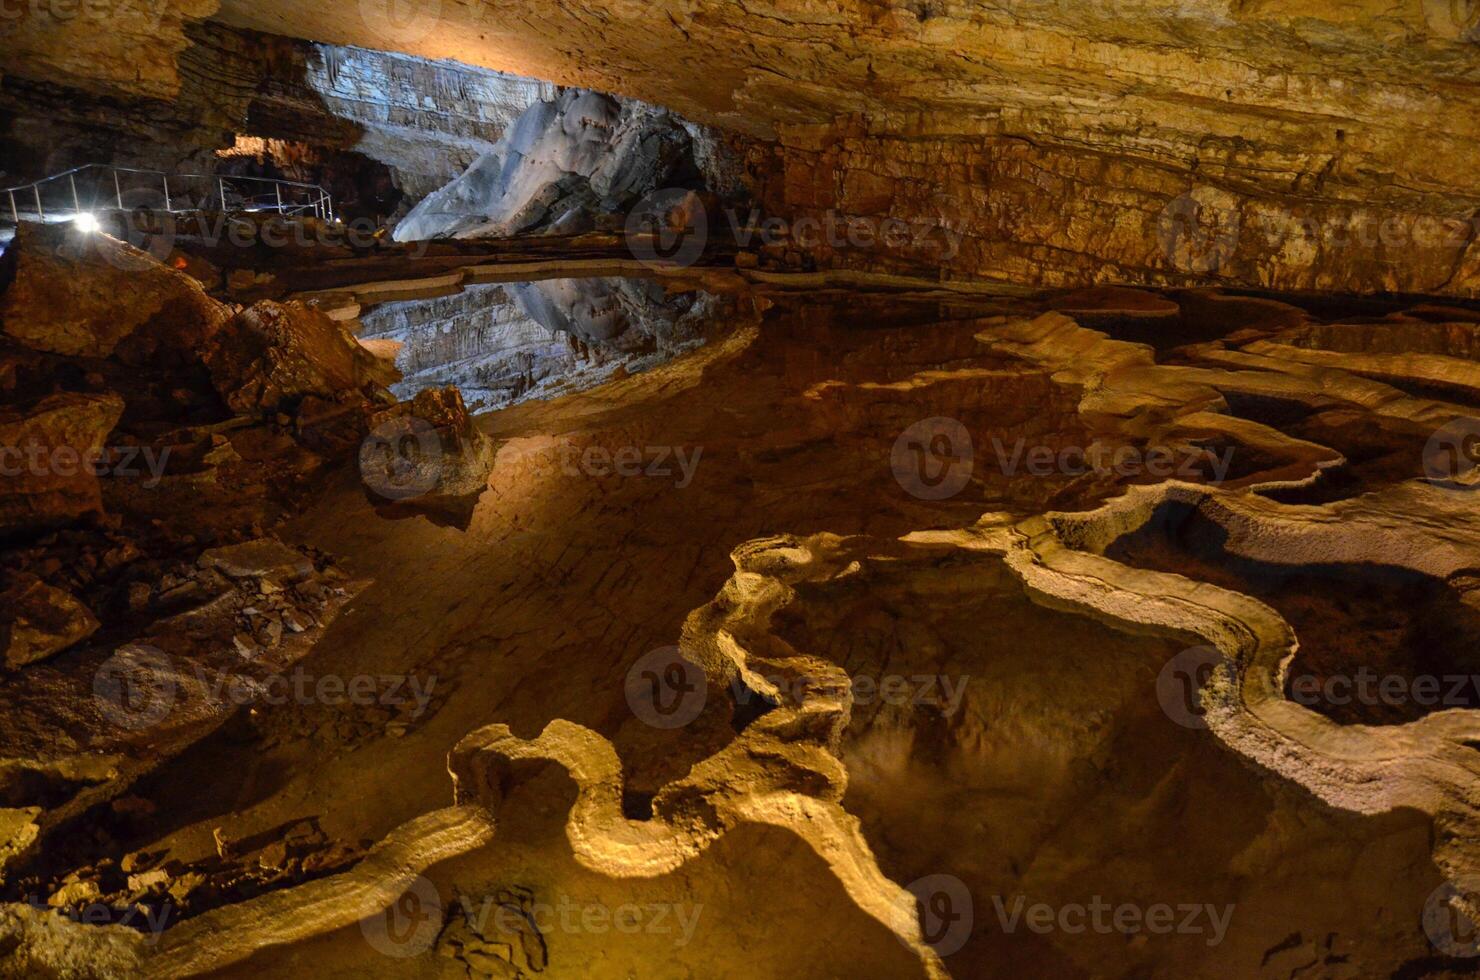 vjetrenica är de största grotta i bosnien och hercegovina, och de mest biologisk mångfald grotta i de värld. foto